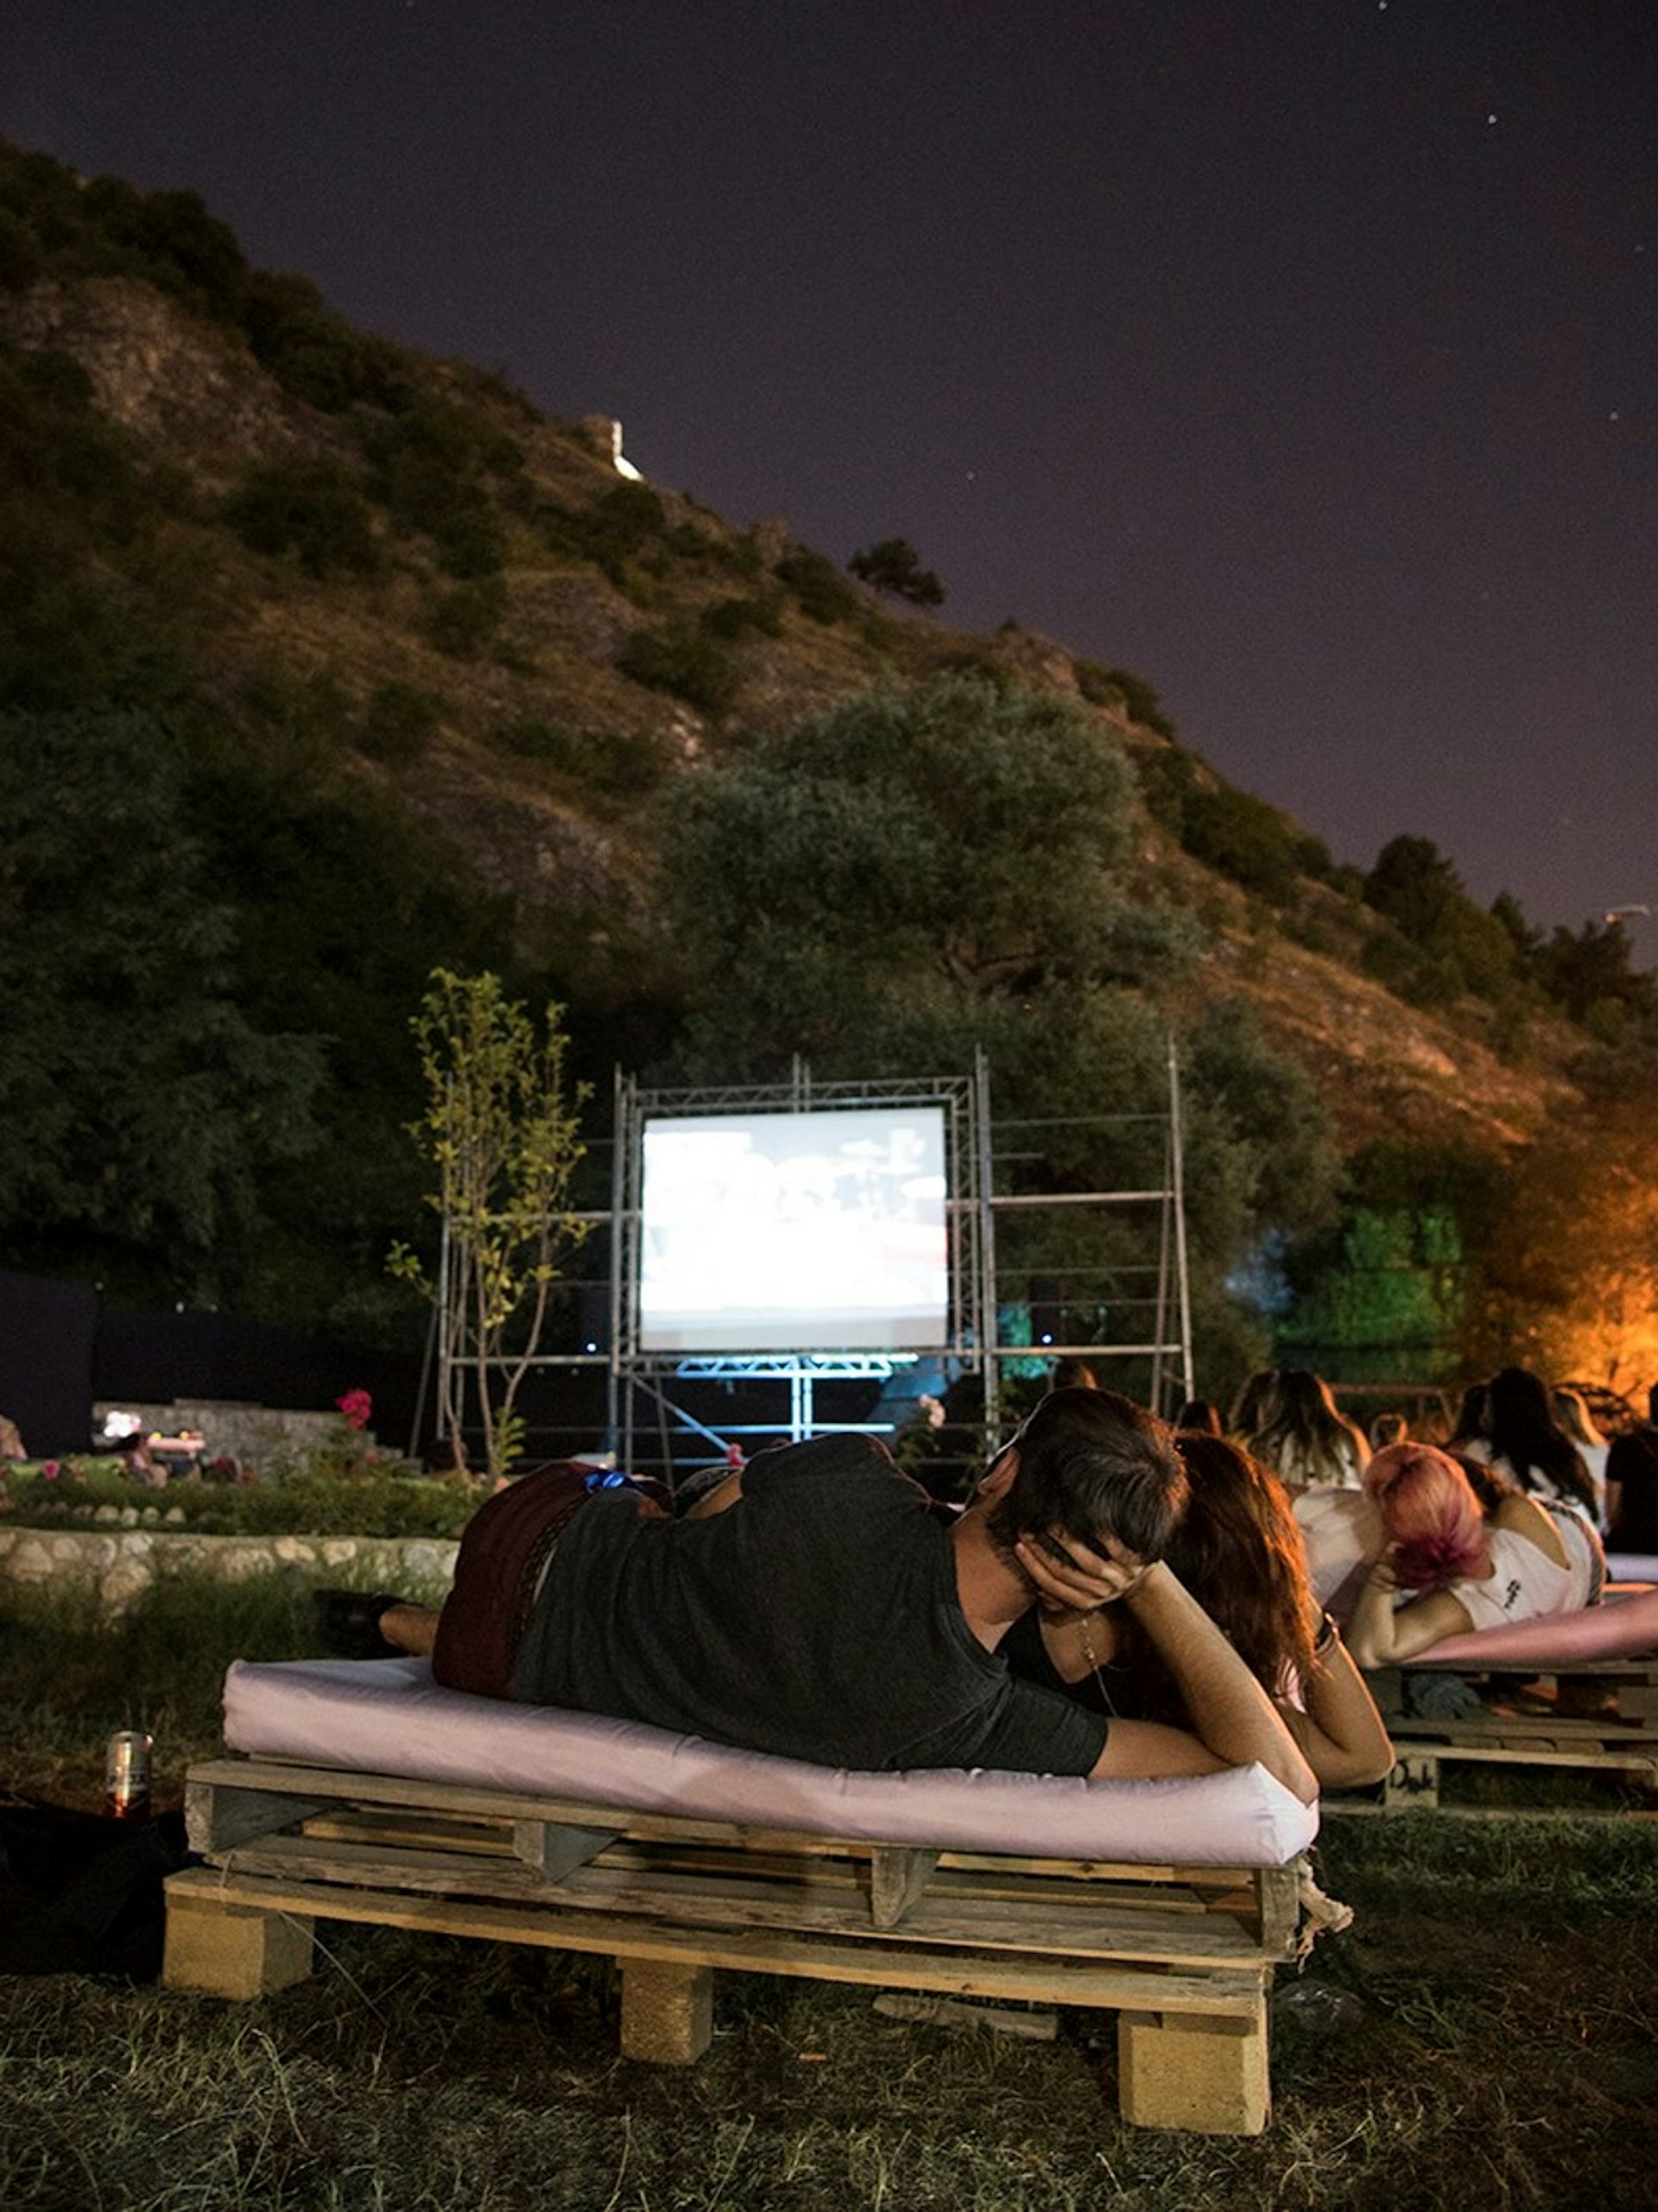 Medieval Prizren fortress turns into an open-air cinema during Dokufest © courtesy of Mrinë Godanca / Dokufest